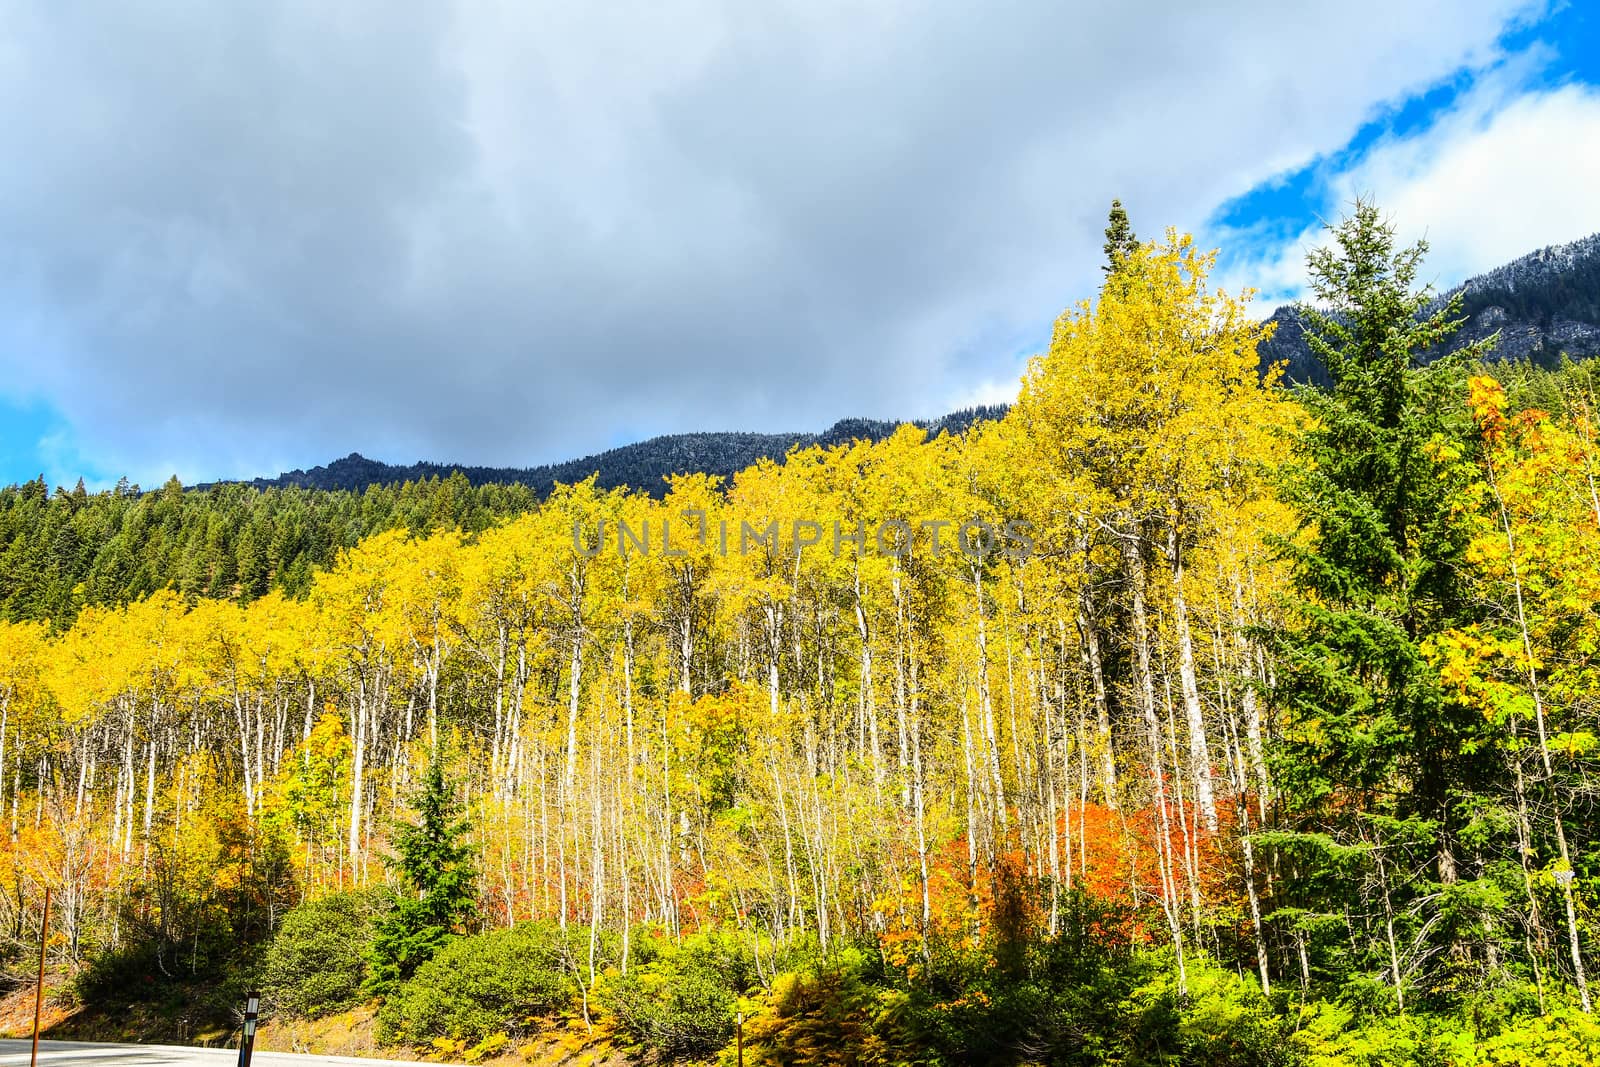 Fall foliage scene near Leavenworth, Washington